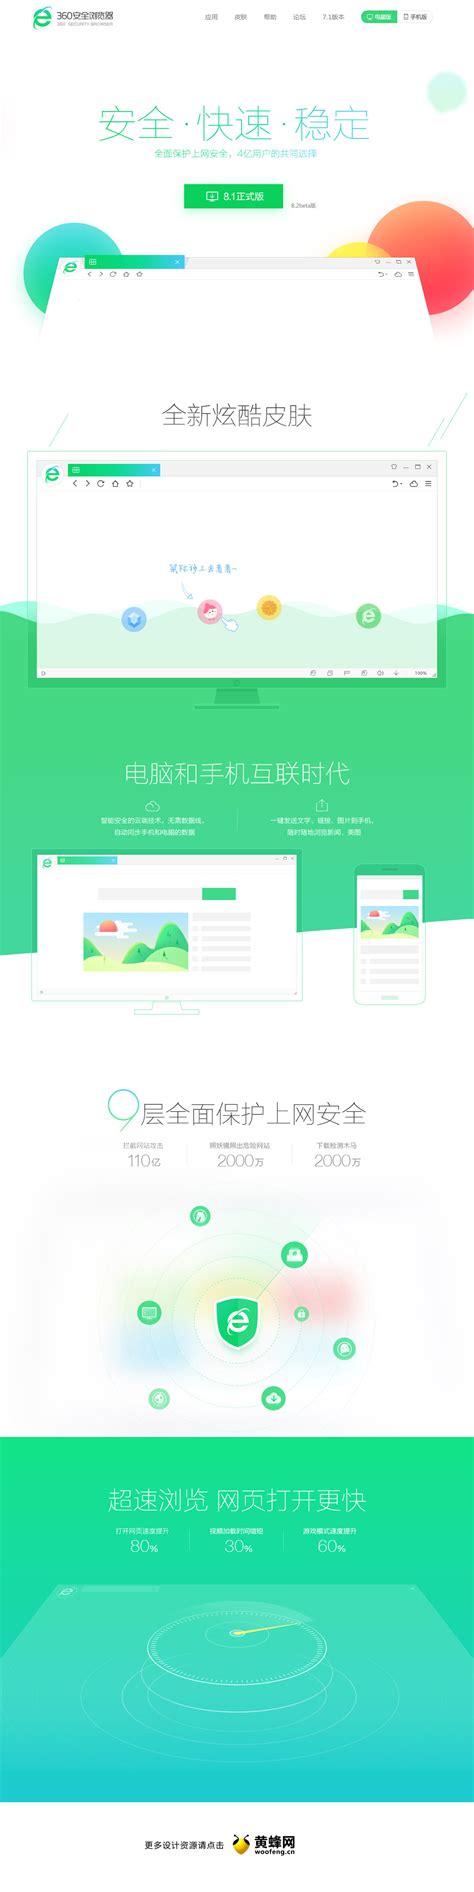 360安全浏览器产品专题网页 - - 大美工dameigong.cn